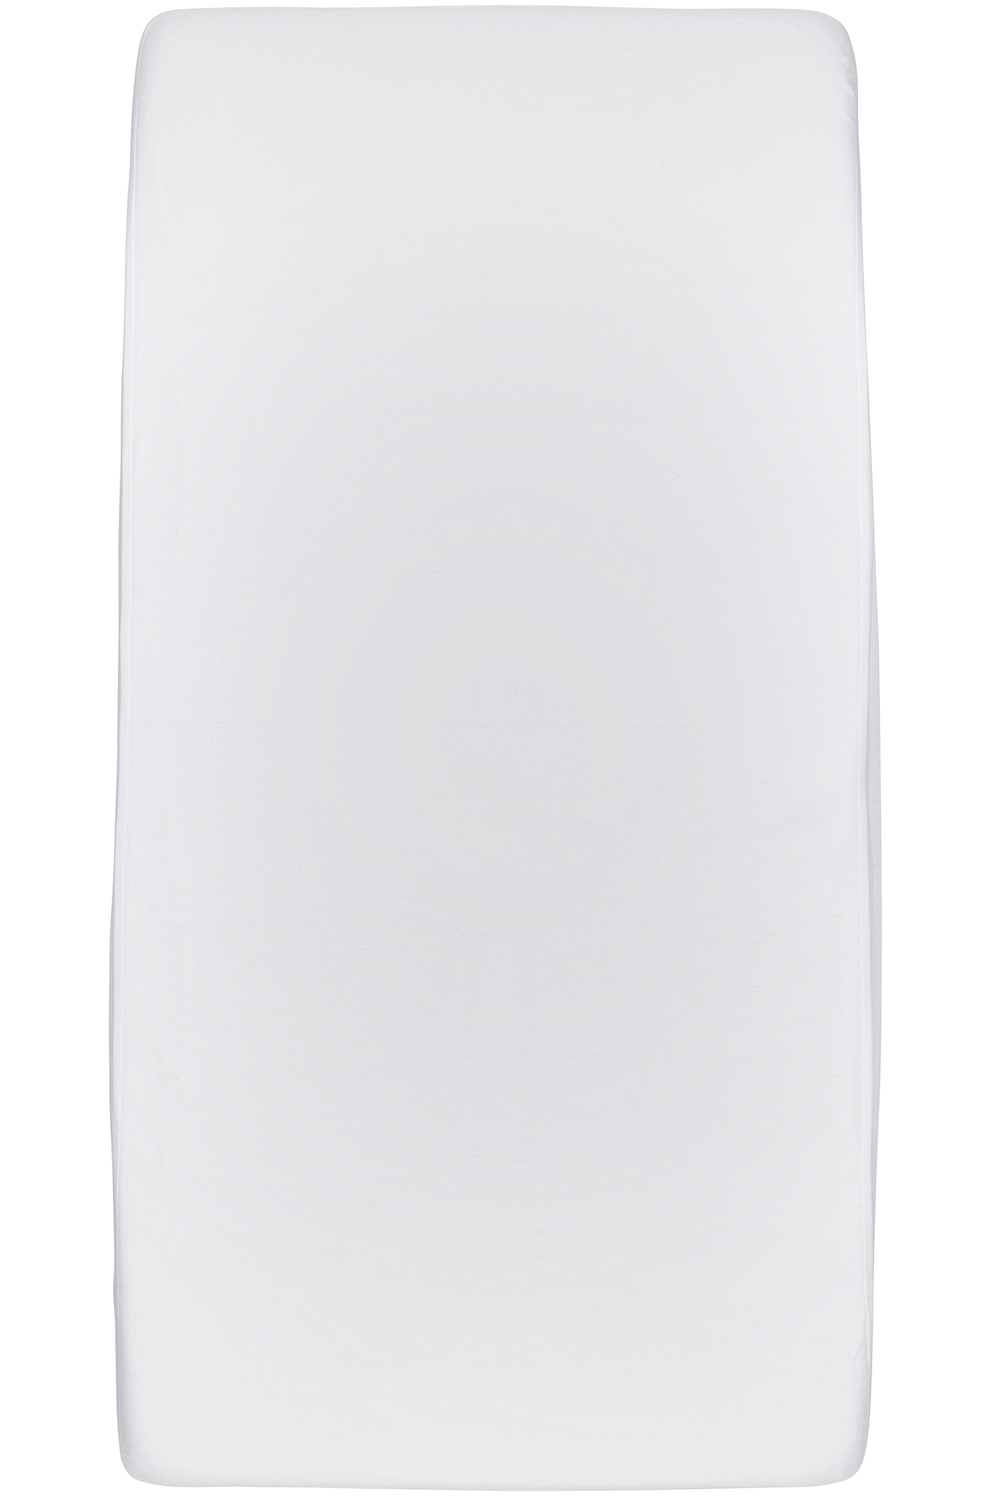 Waterdicht hoeslaken tweepersoons - white - 180x200cm